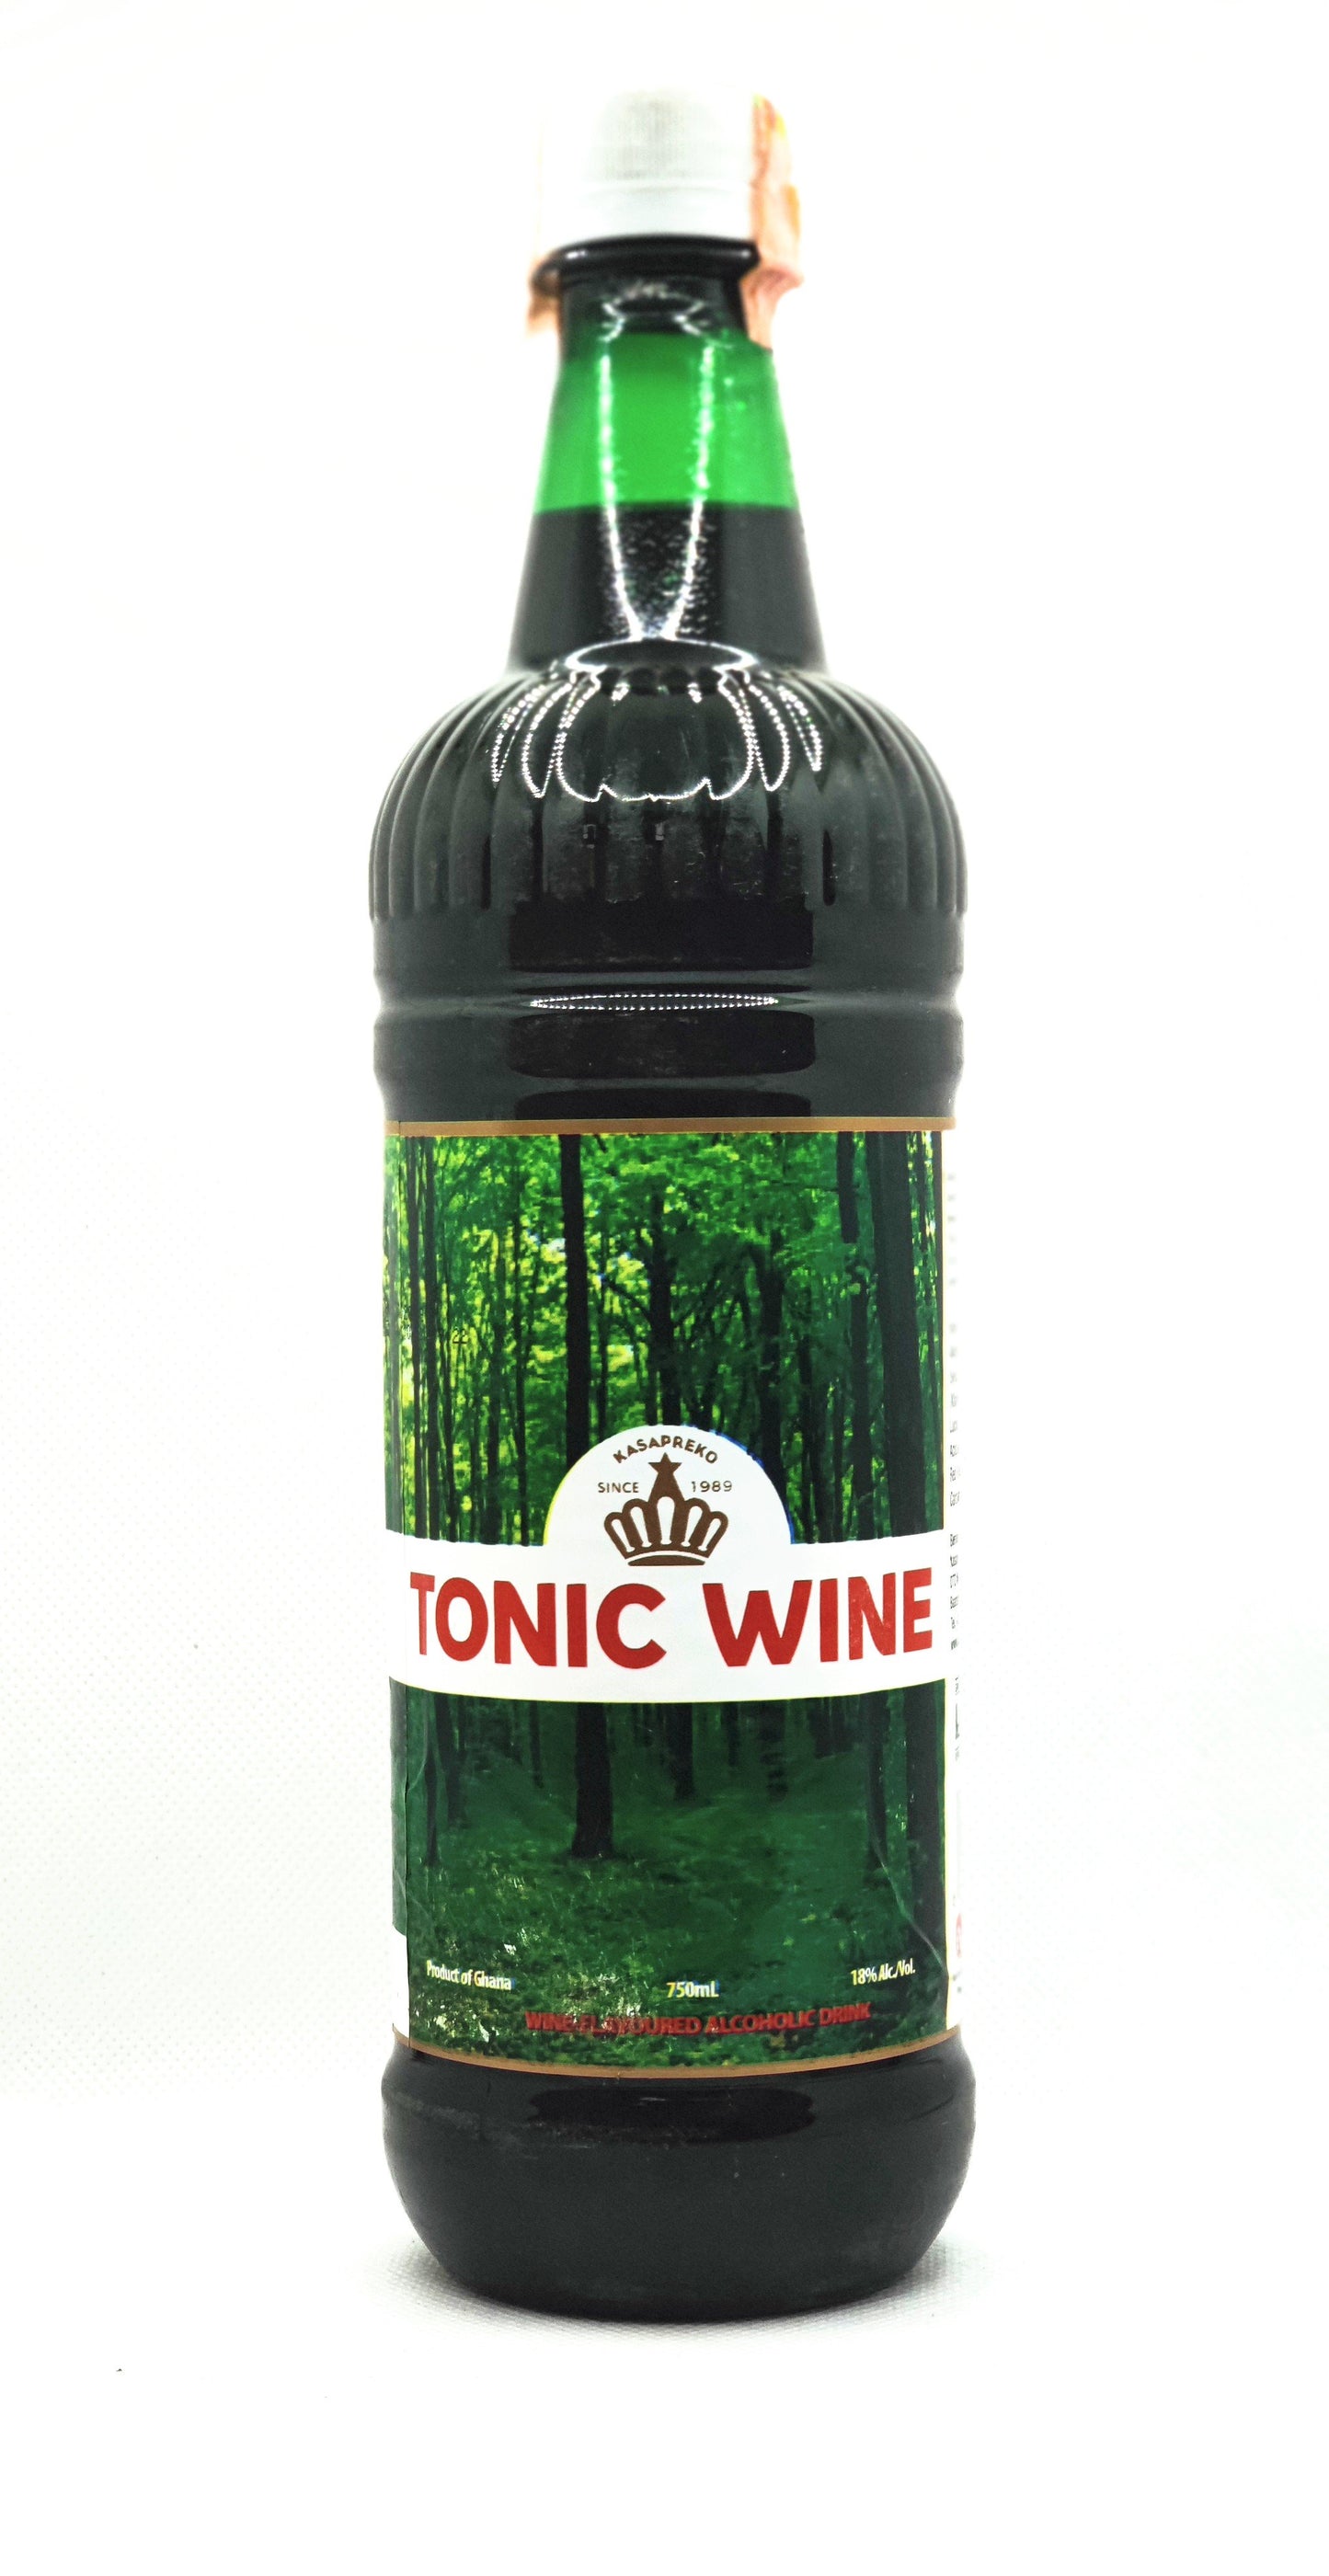 750 millilitre bottle of kasapreko tonic wine